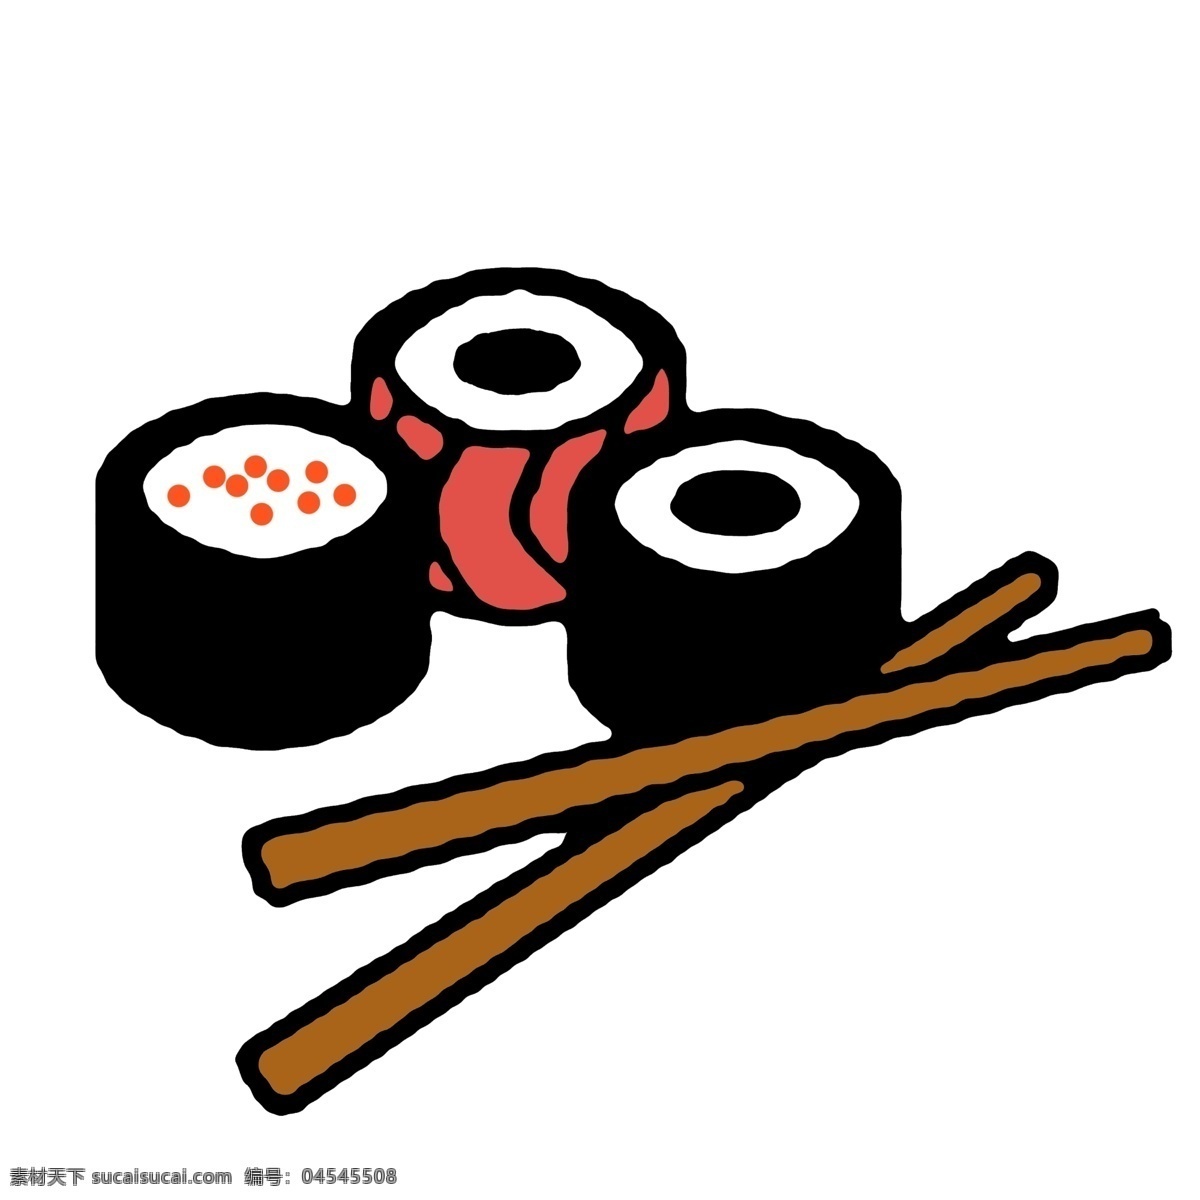 日本 寿司 装饰 插画 日本寿司 黑色的寿司 营养寿司 寿司装饰 美味的寿司 卡通寿司 寿司插画